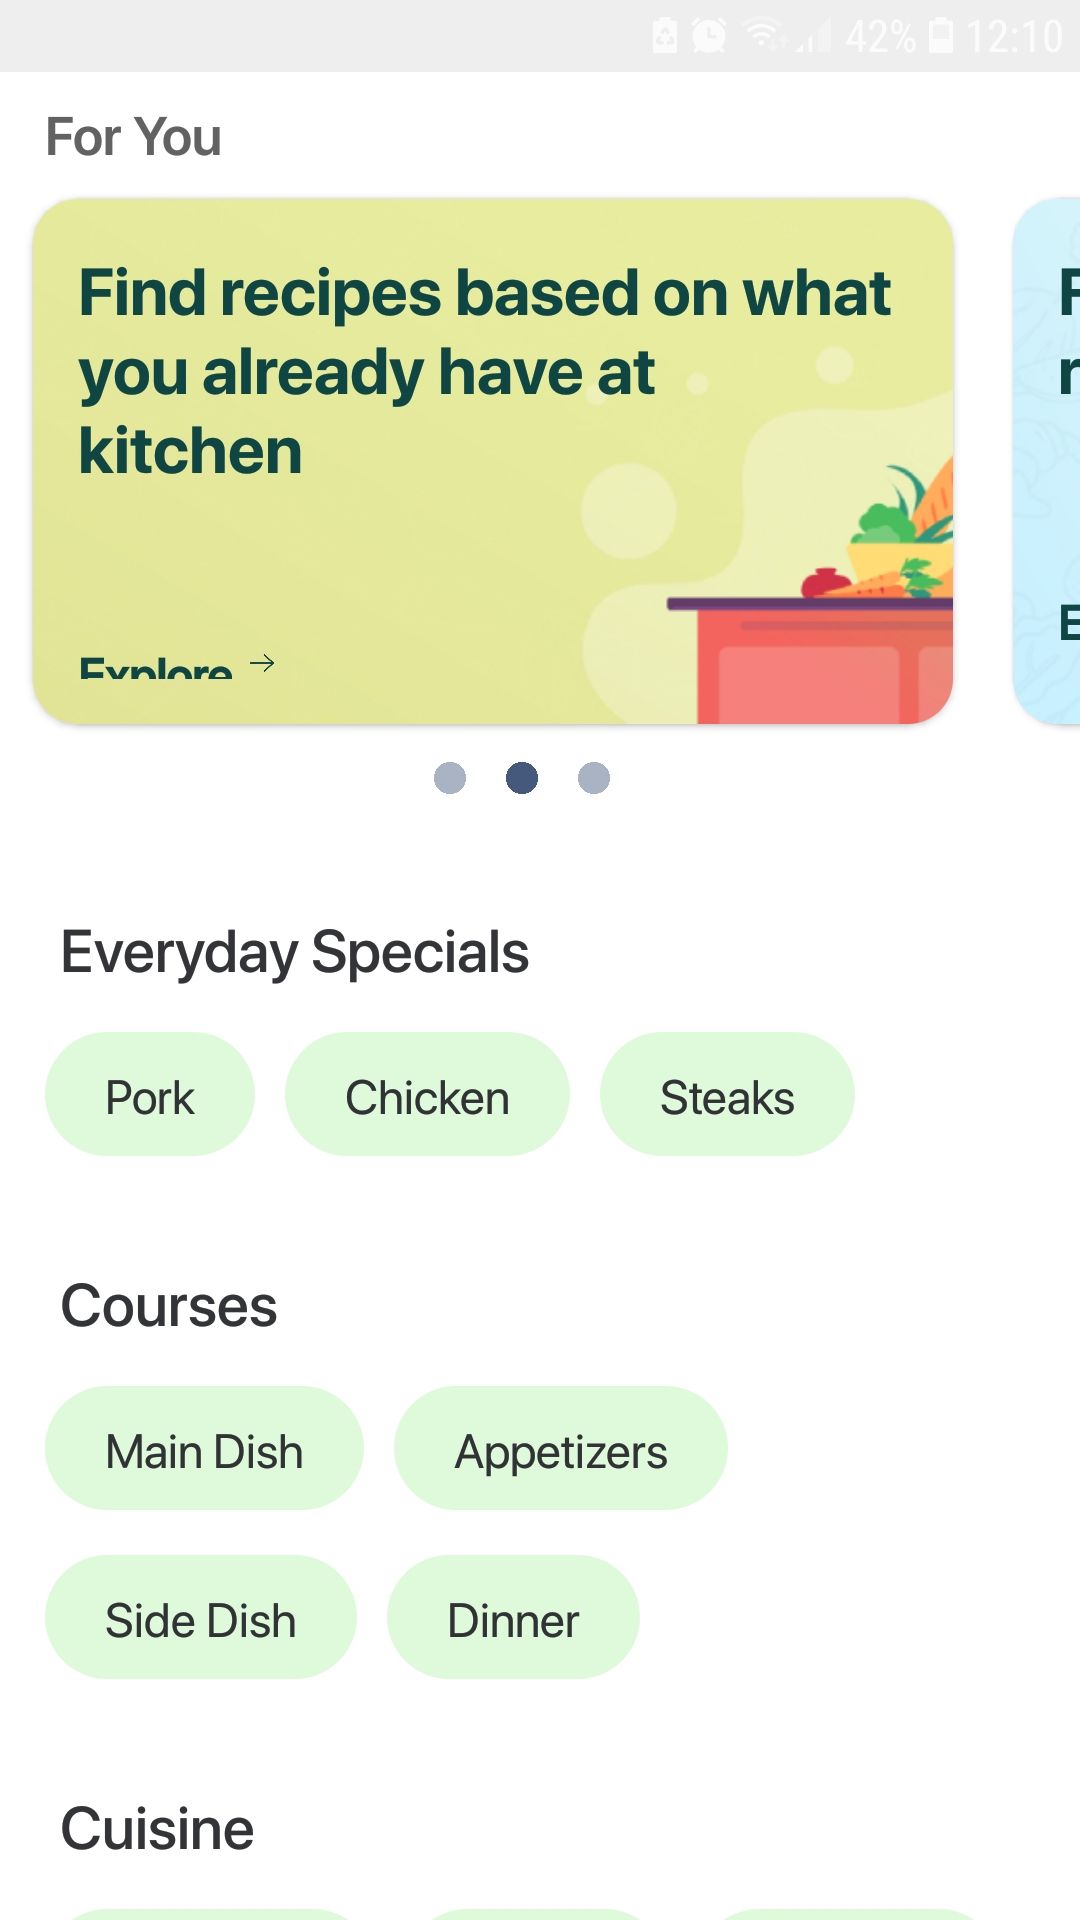 Barbecue Recipes mobile grilling recipe app search